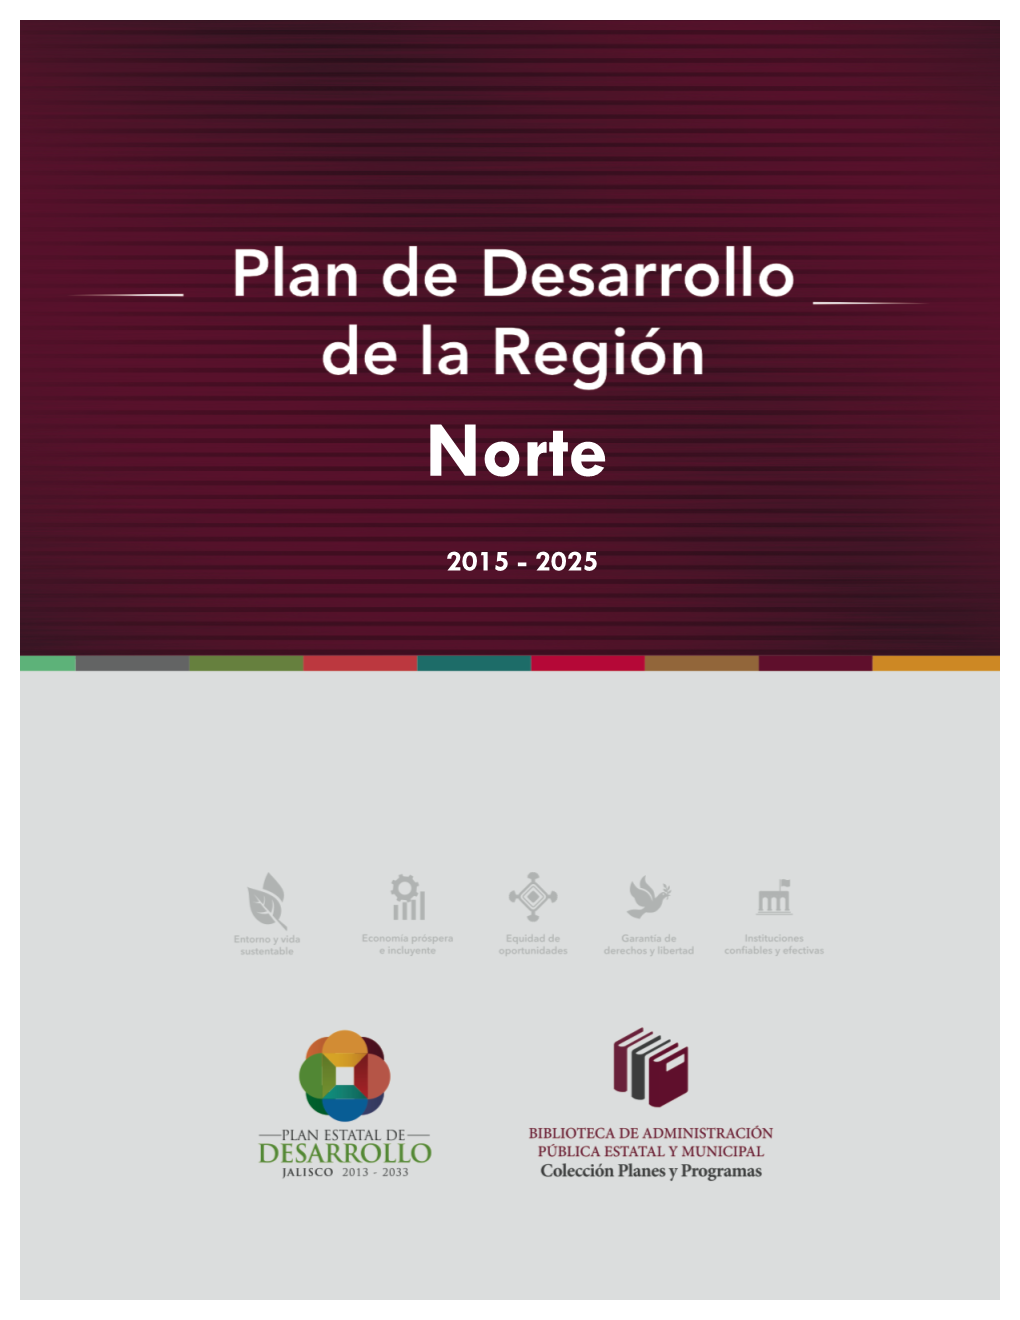 Pedjalisco 2013 - 2033 / Plan De Desarrollo De La Región Norte 1 CONTENIDO